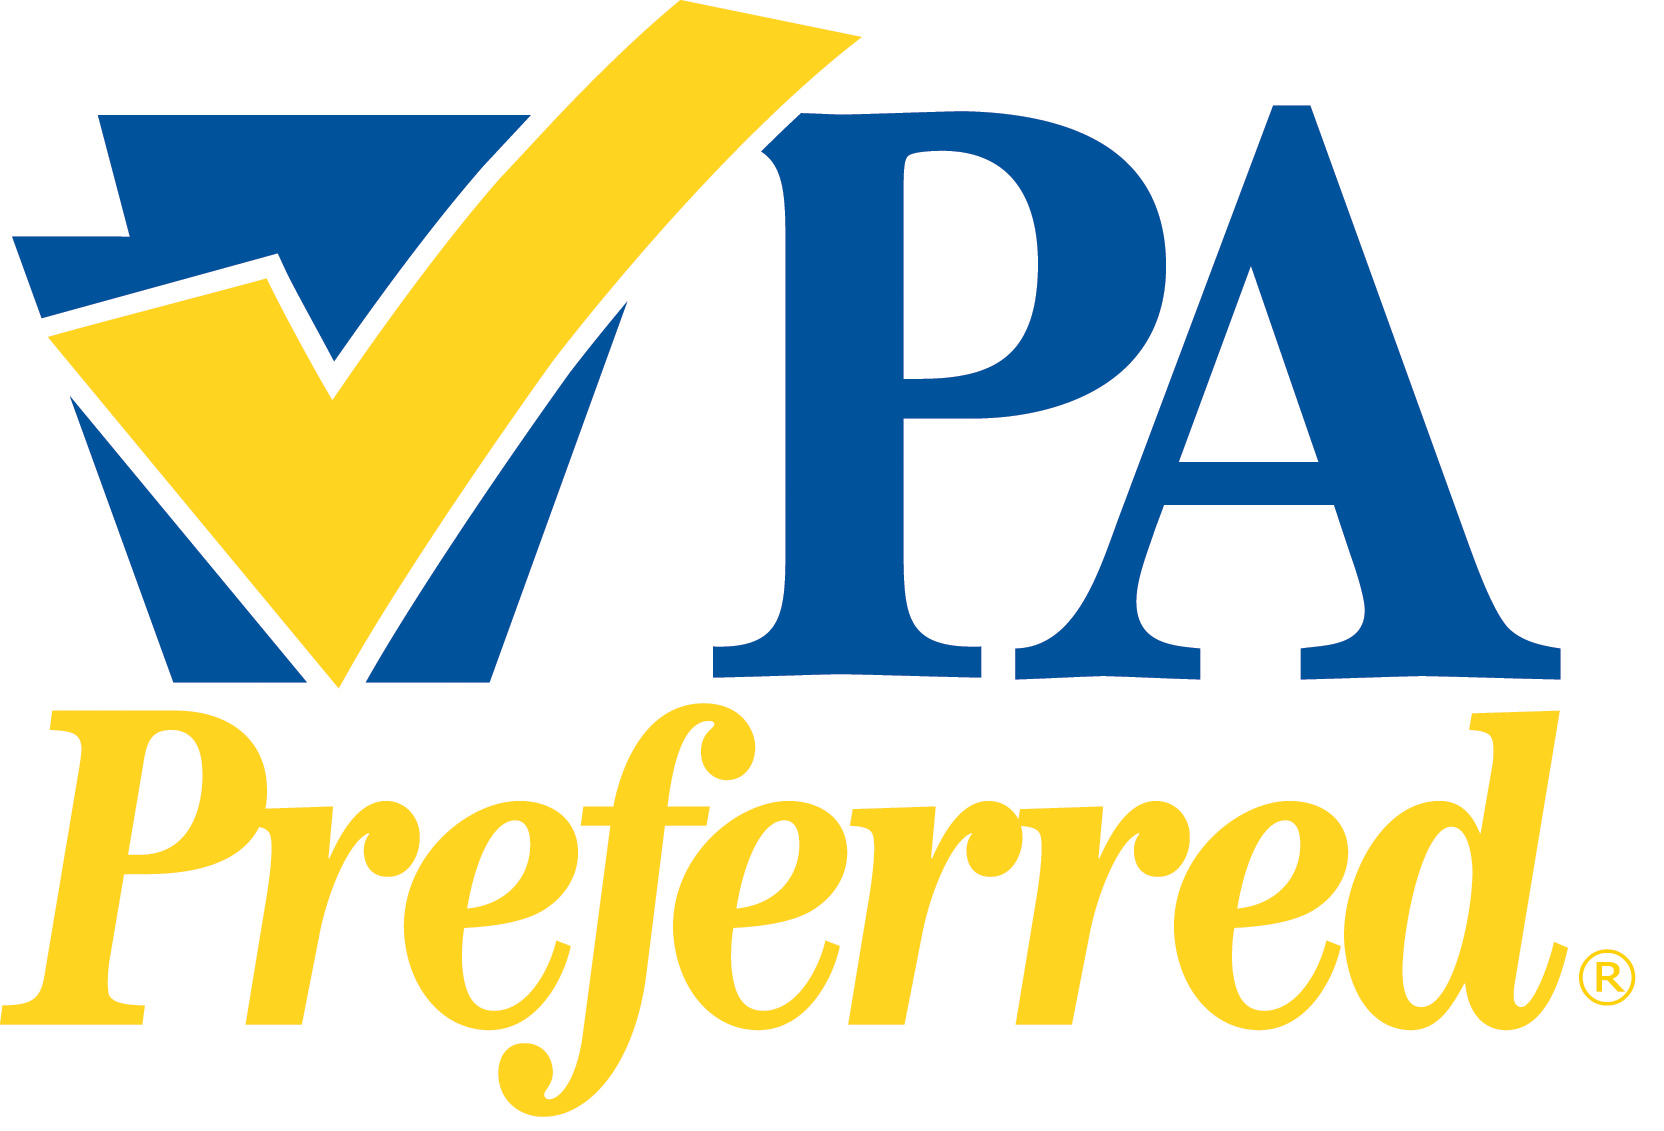 PA Preferred Logo.png